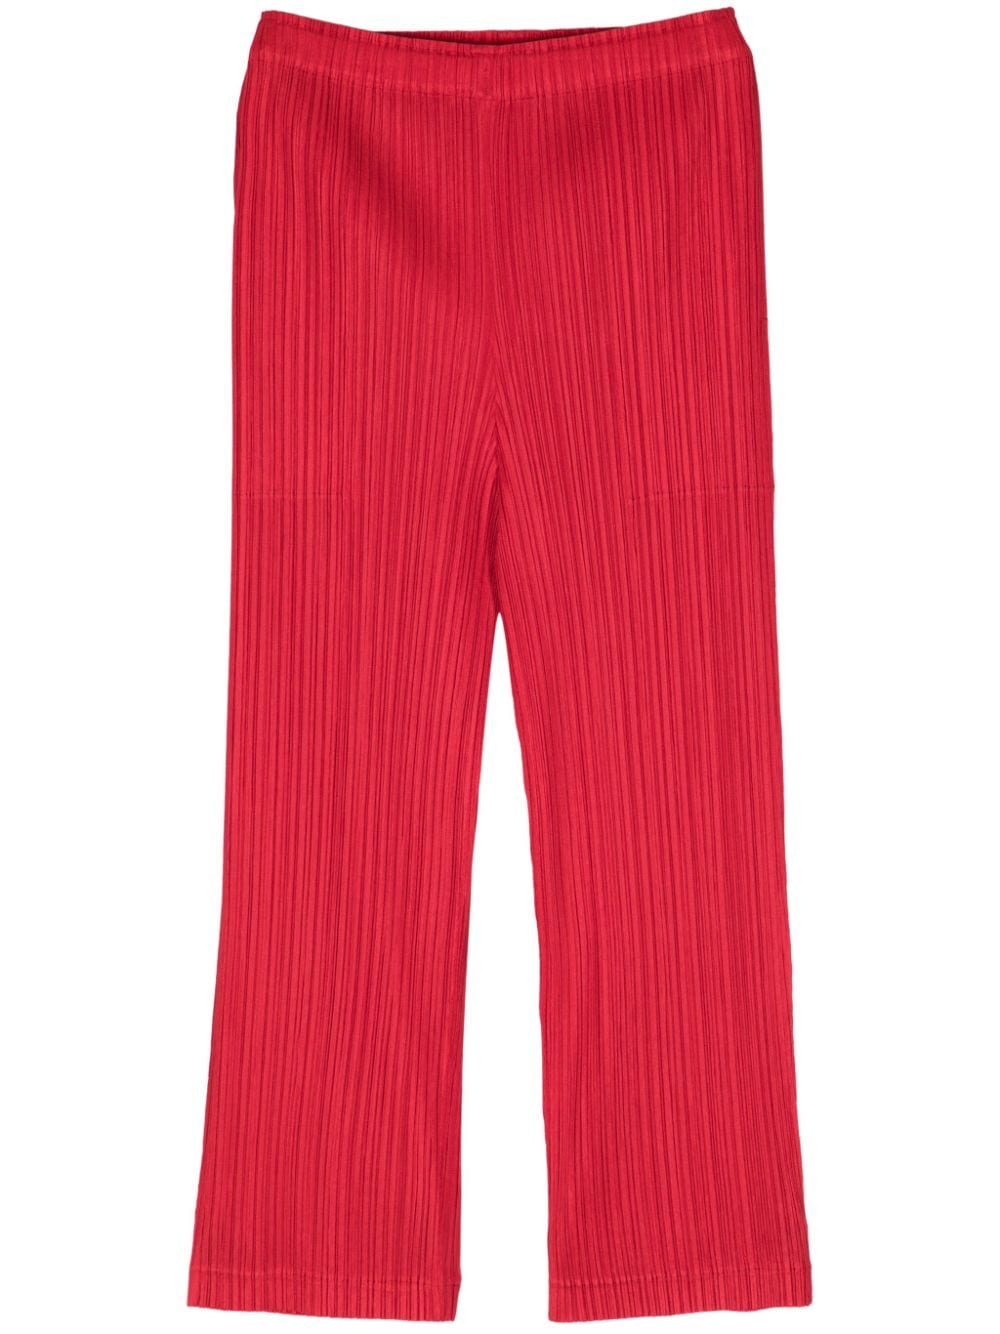 pleats please issey miyake pantalon plissé thicker à coupe droite - rouge